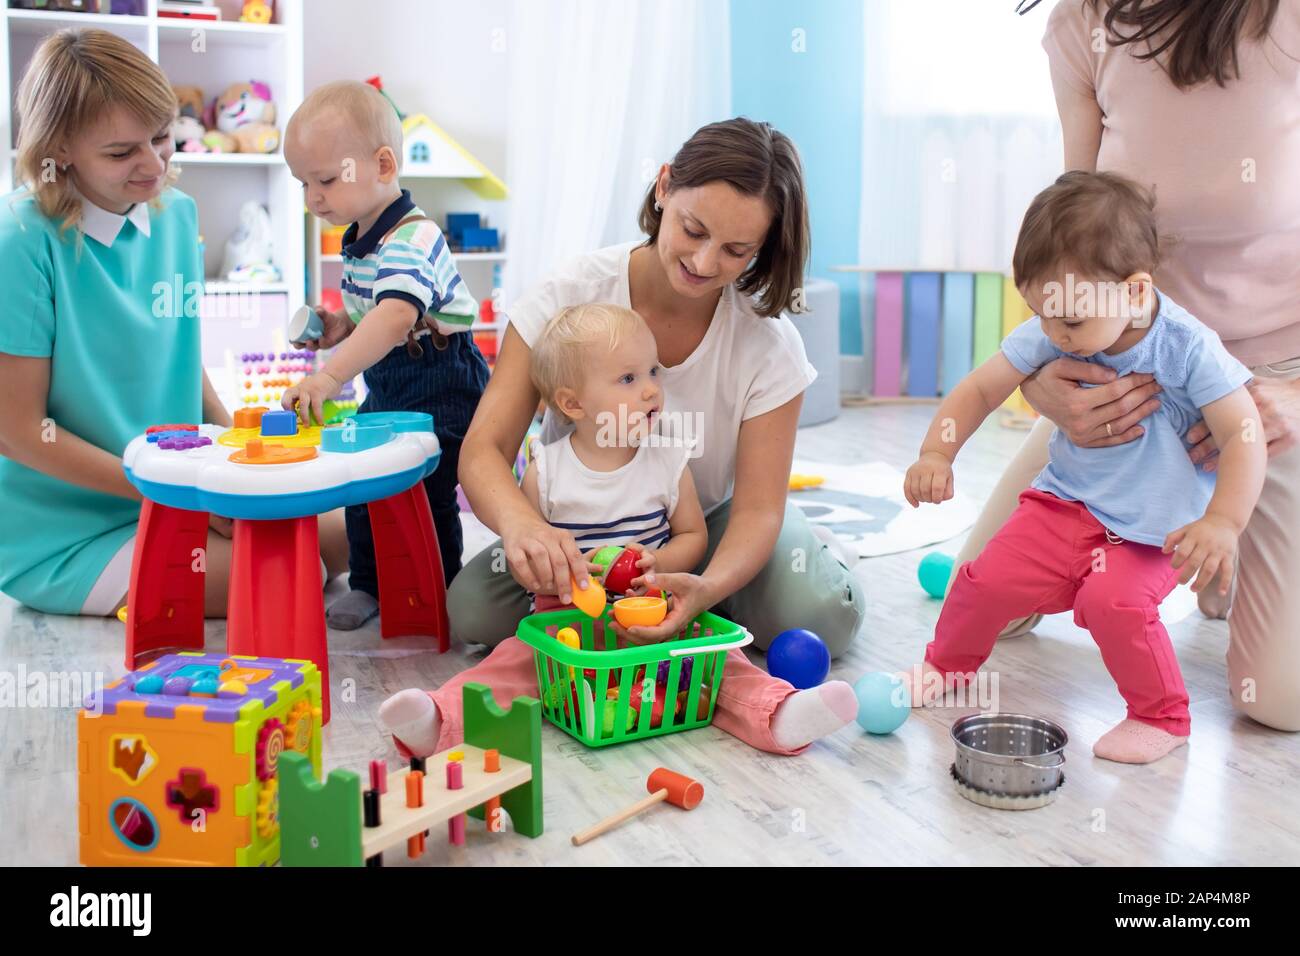 Un grupo de madres tienen un pasatiempo divertido con sus bebés niños pequeños en el cuarto de juegos en el cuidado de los niños Foto de stock